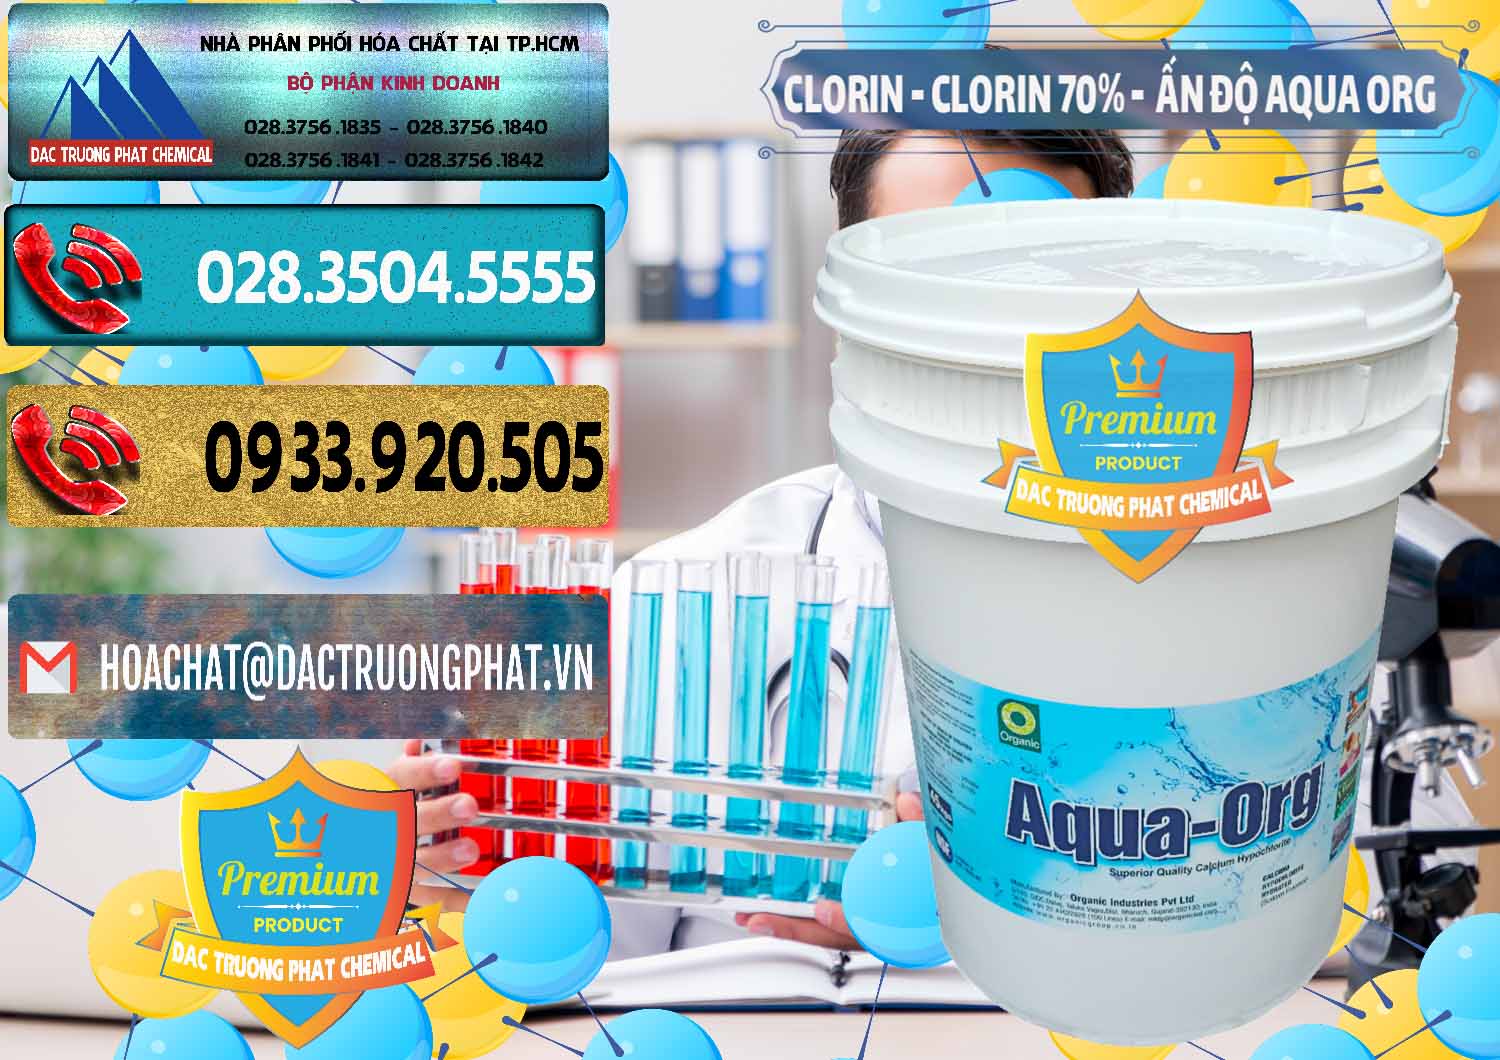 Chuyên cung cấp & bán Chlorine – Clorin Ấn Độ Aqua ORG Organic India - 0051 - Nơi cung cấp - phân phối hóa chất tại TP.HCM - hoachatdetnhuom.com